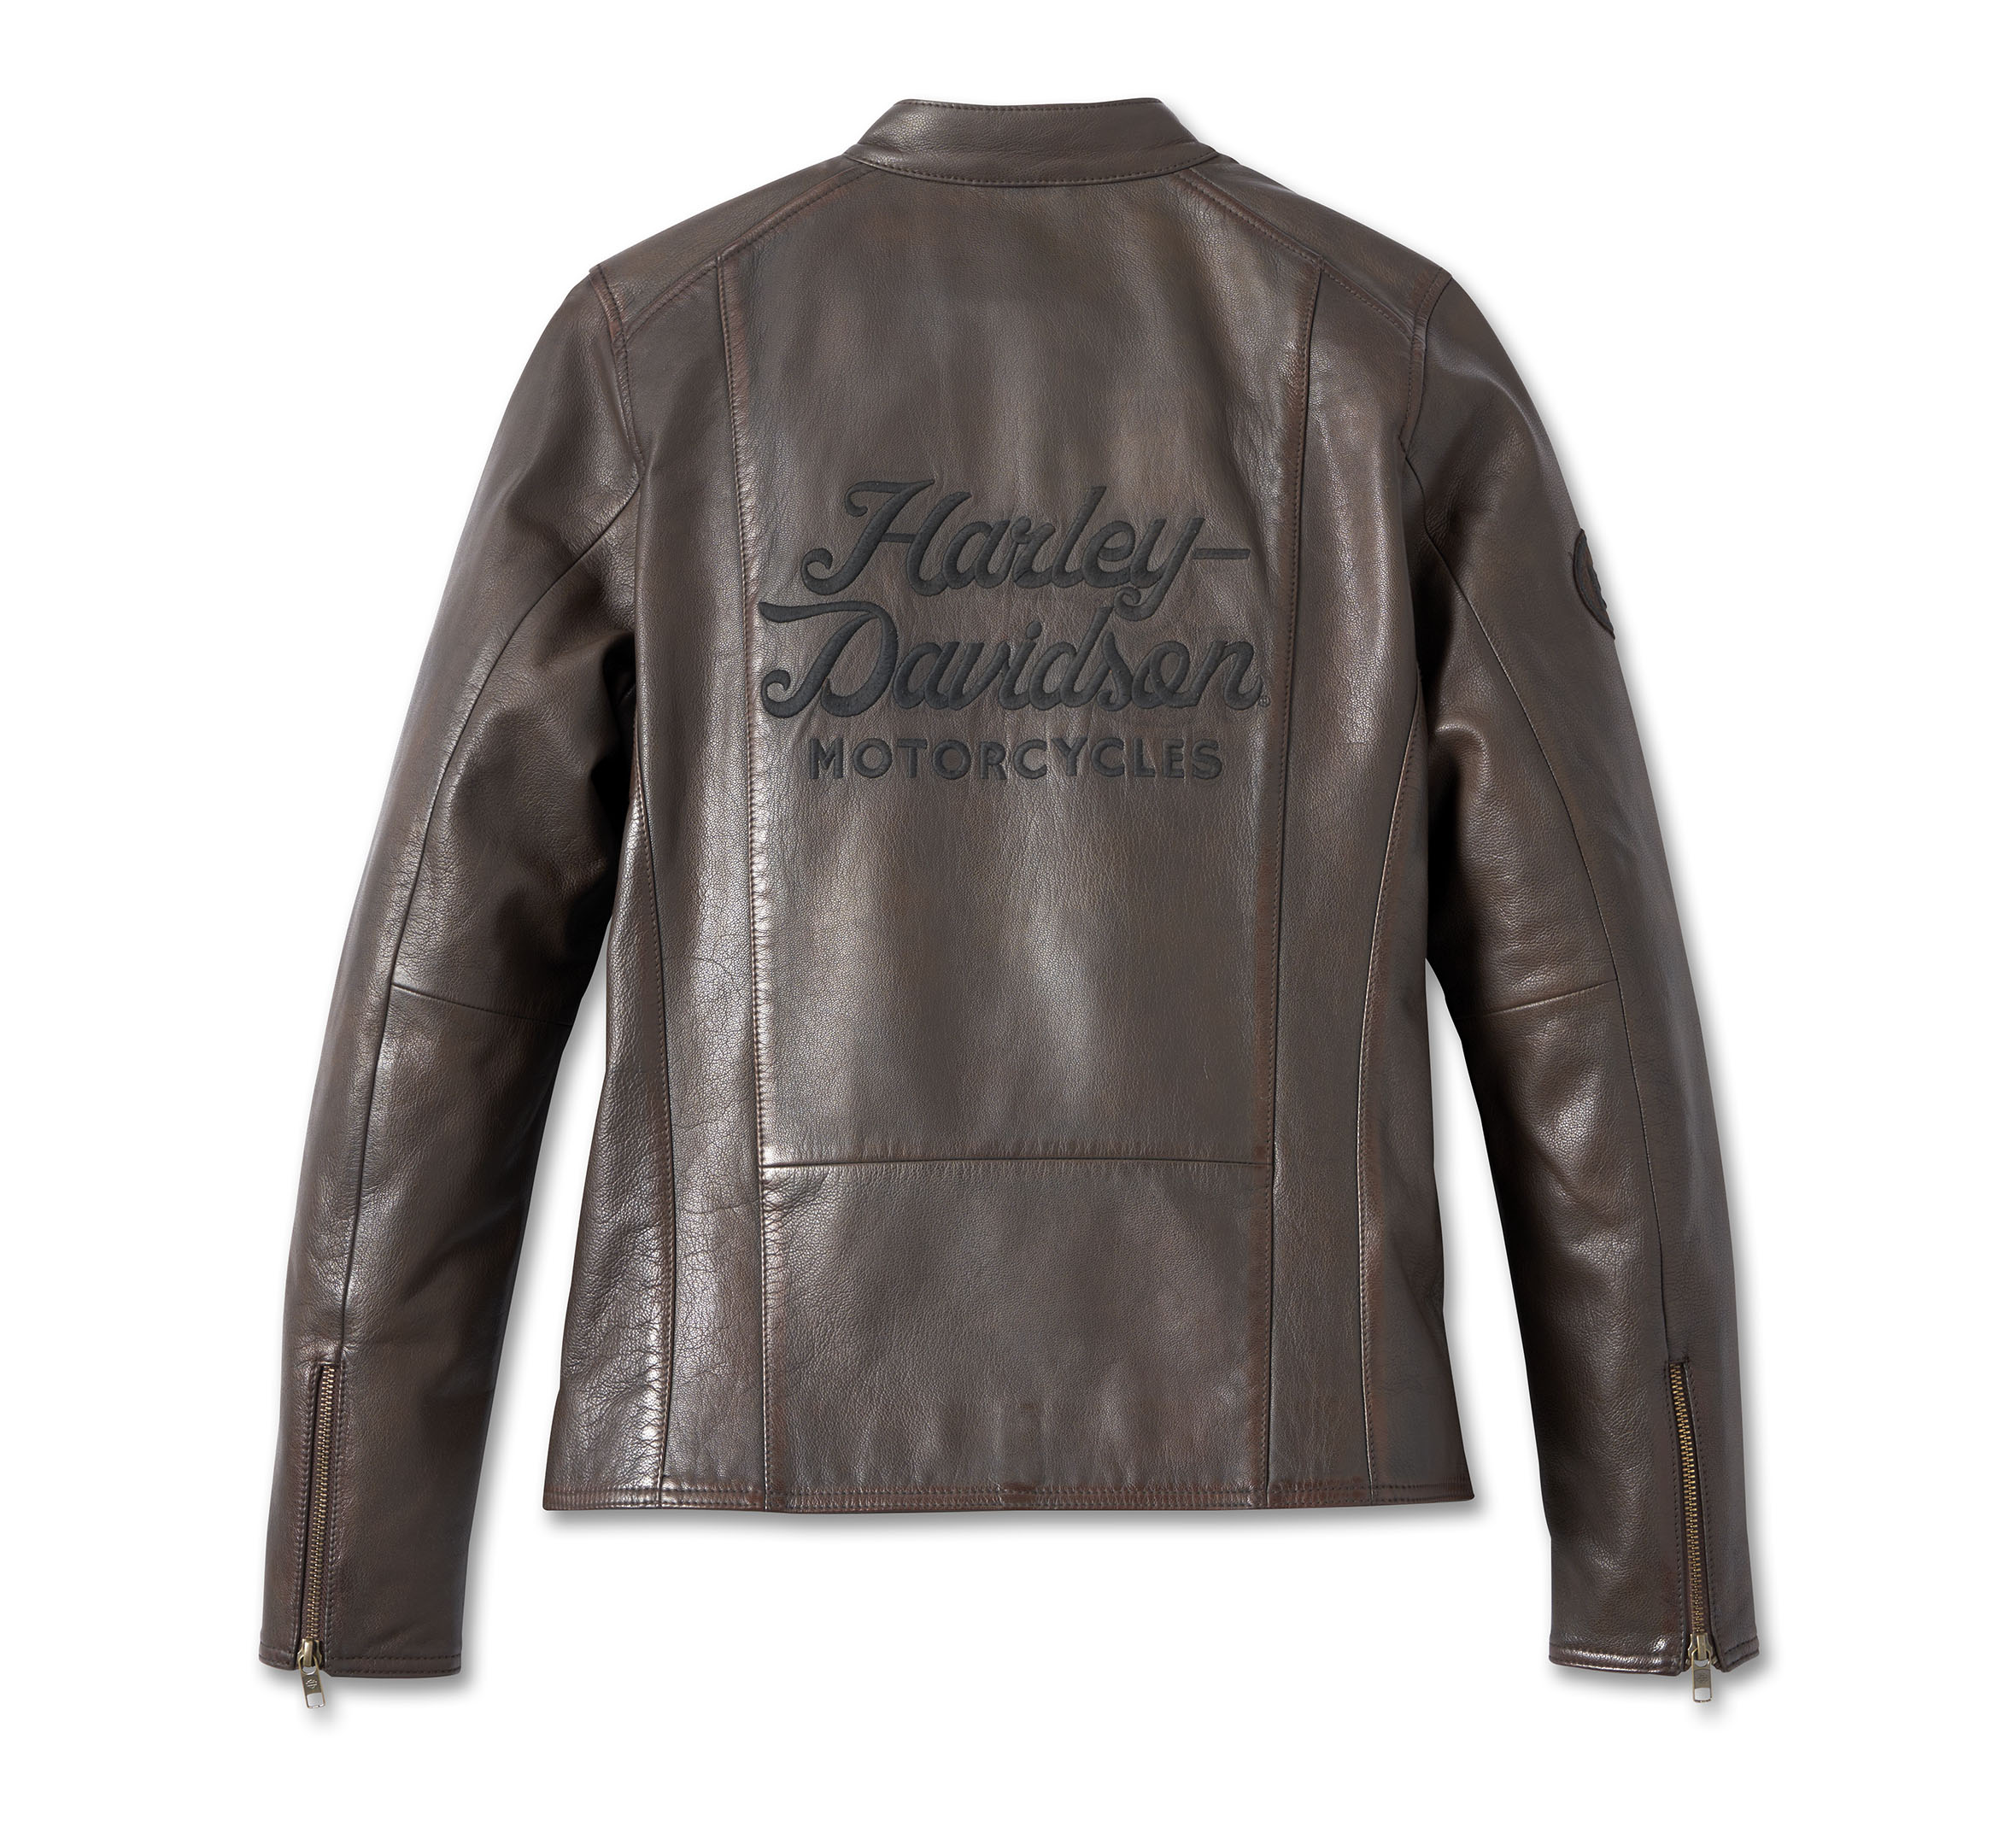 Vintage Harley Davidson Leather Jacket – M/L → Hotbox Vintage